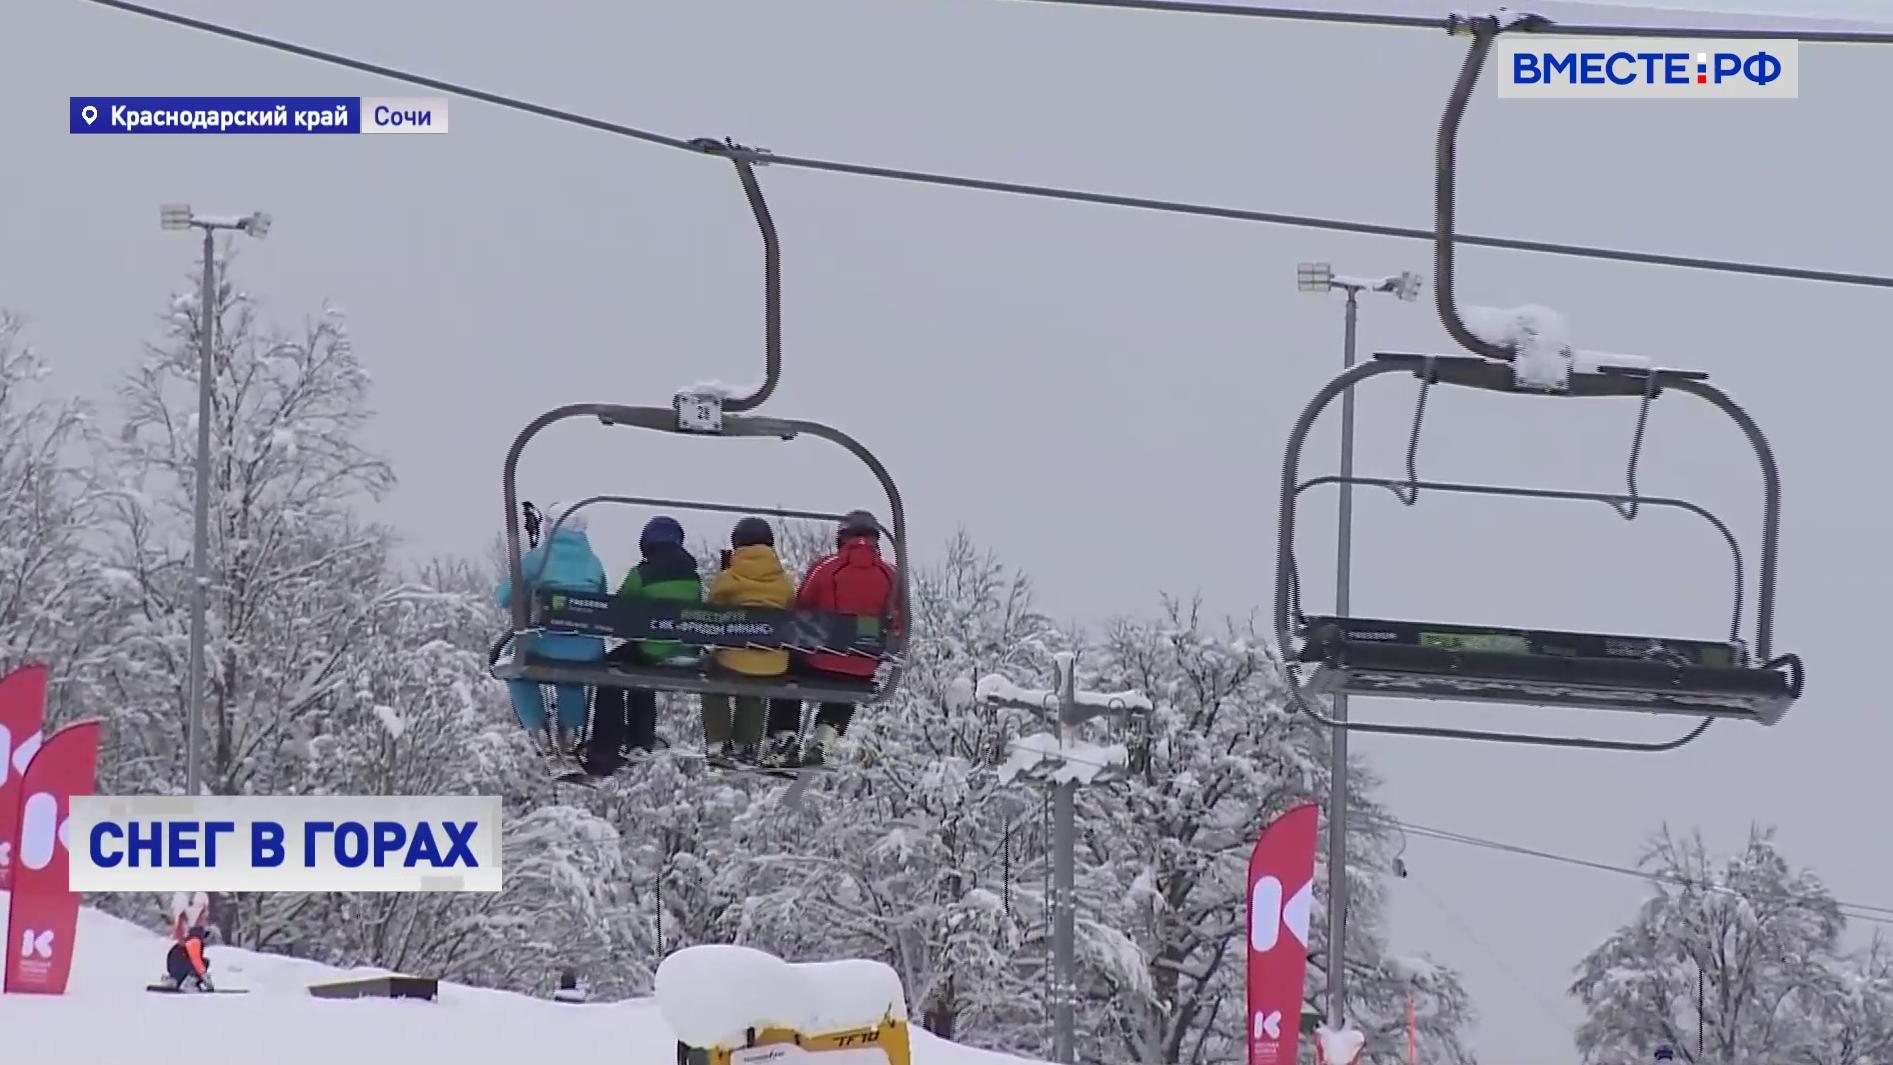 РЕПОРТАЖ: На горнолыжных курортах Сочи внимательно следят за снежной обстановкой